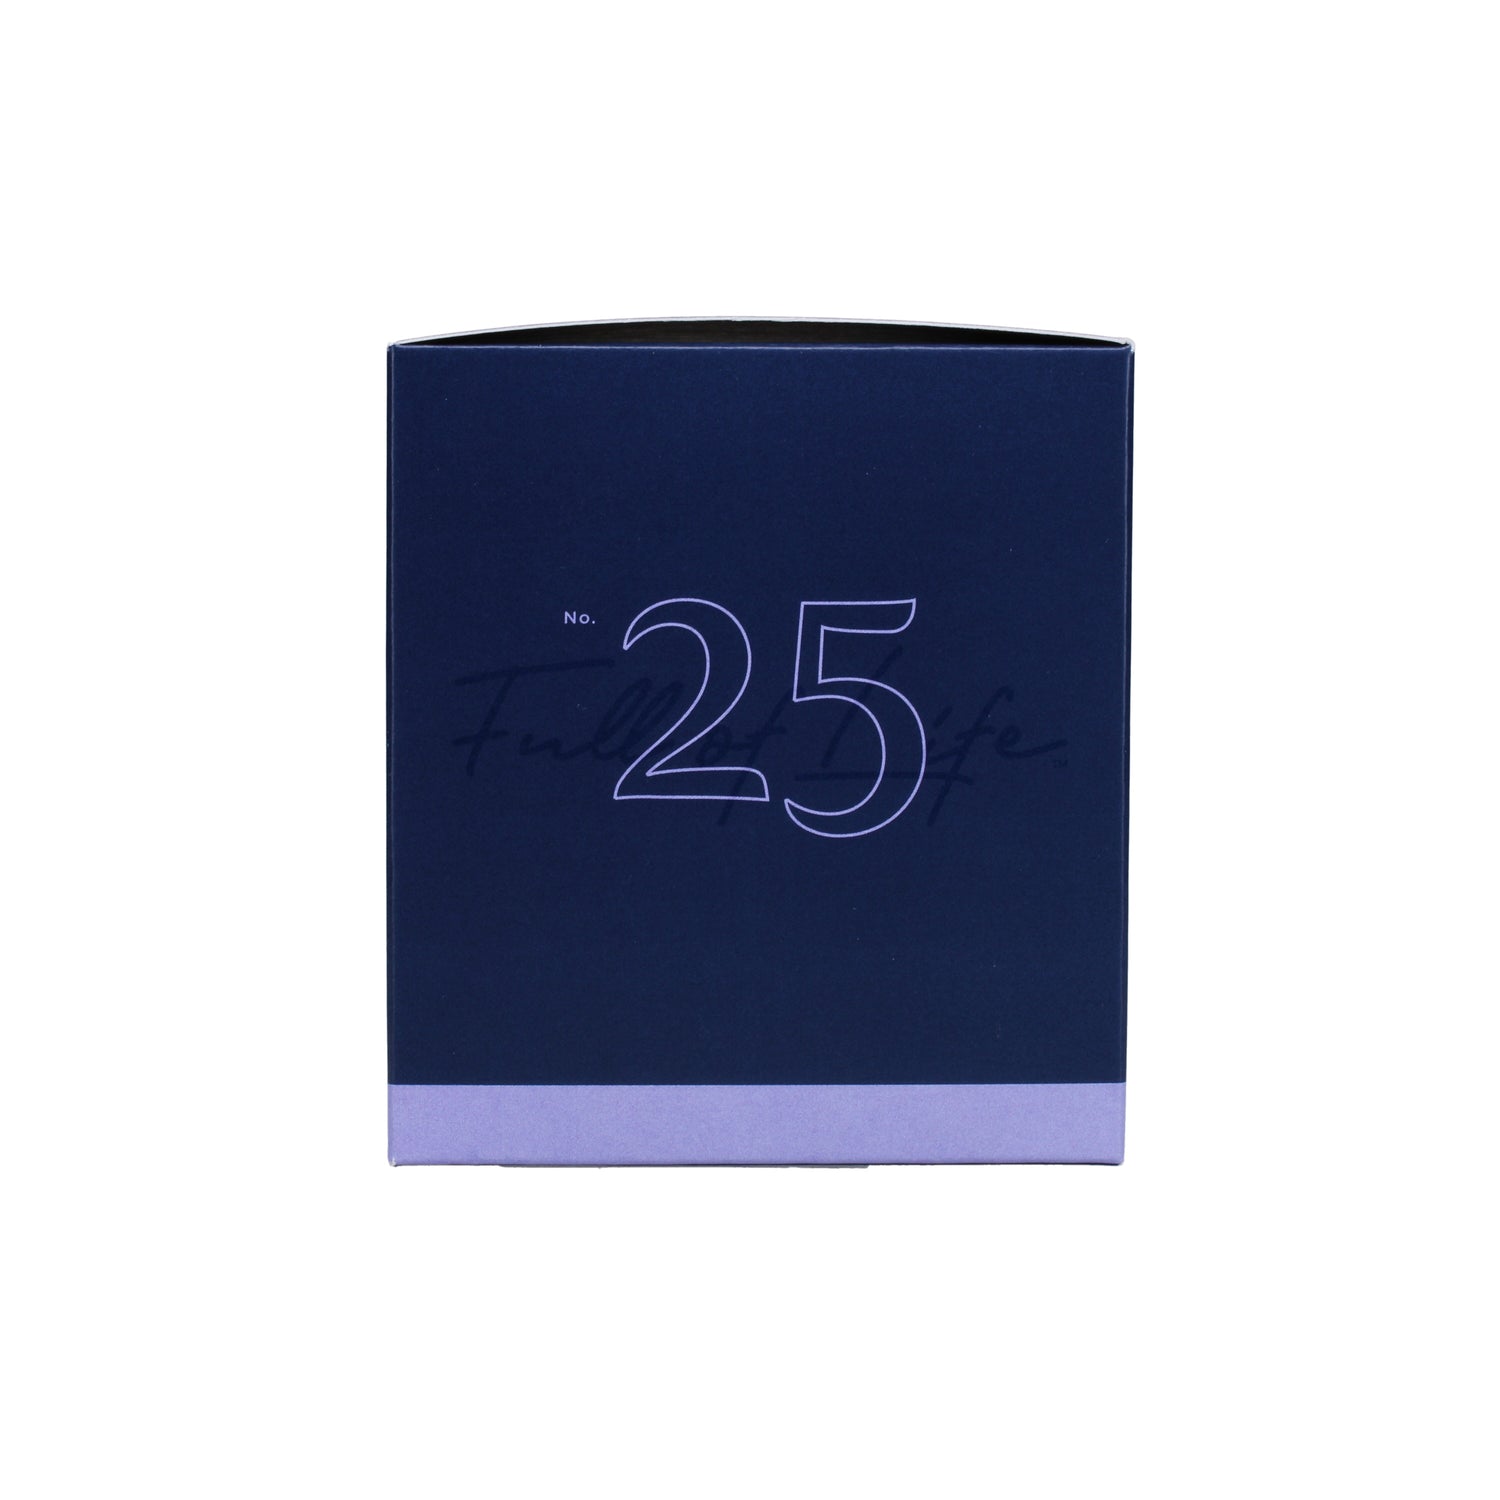 No. 25 Lavender de Provence 7 oz. Candle in Signature Box Image 6